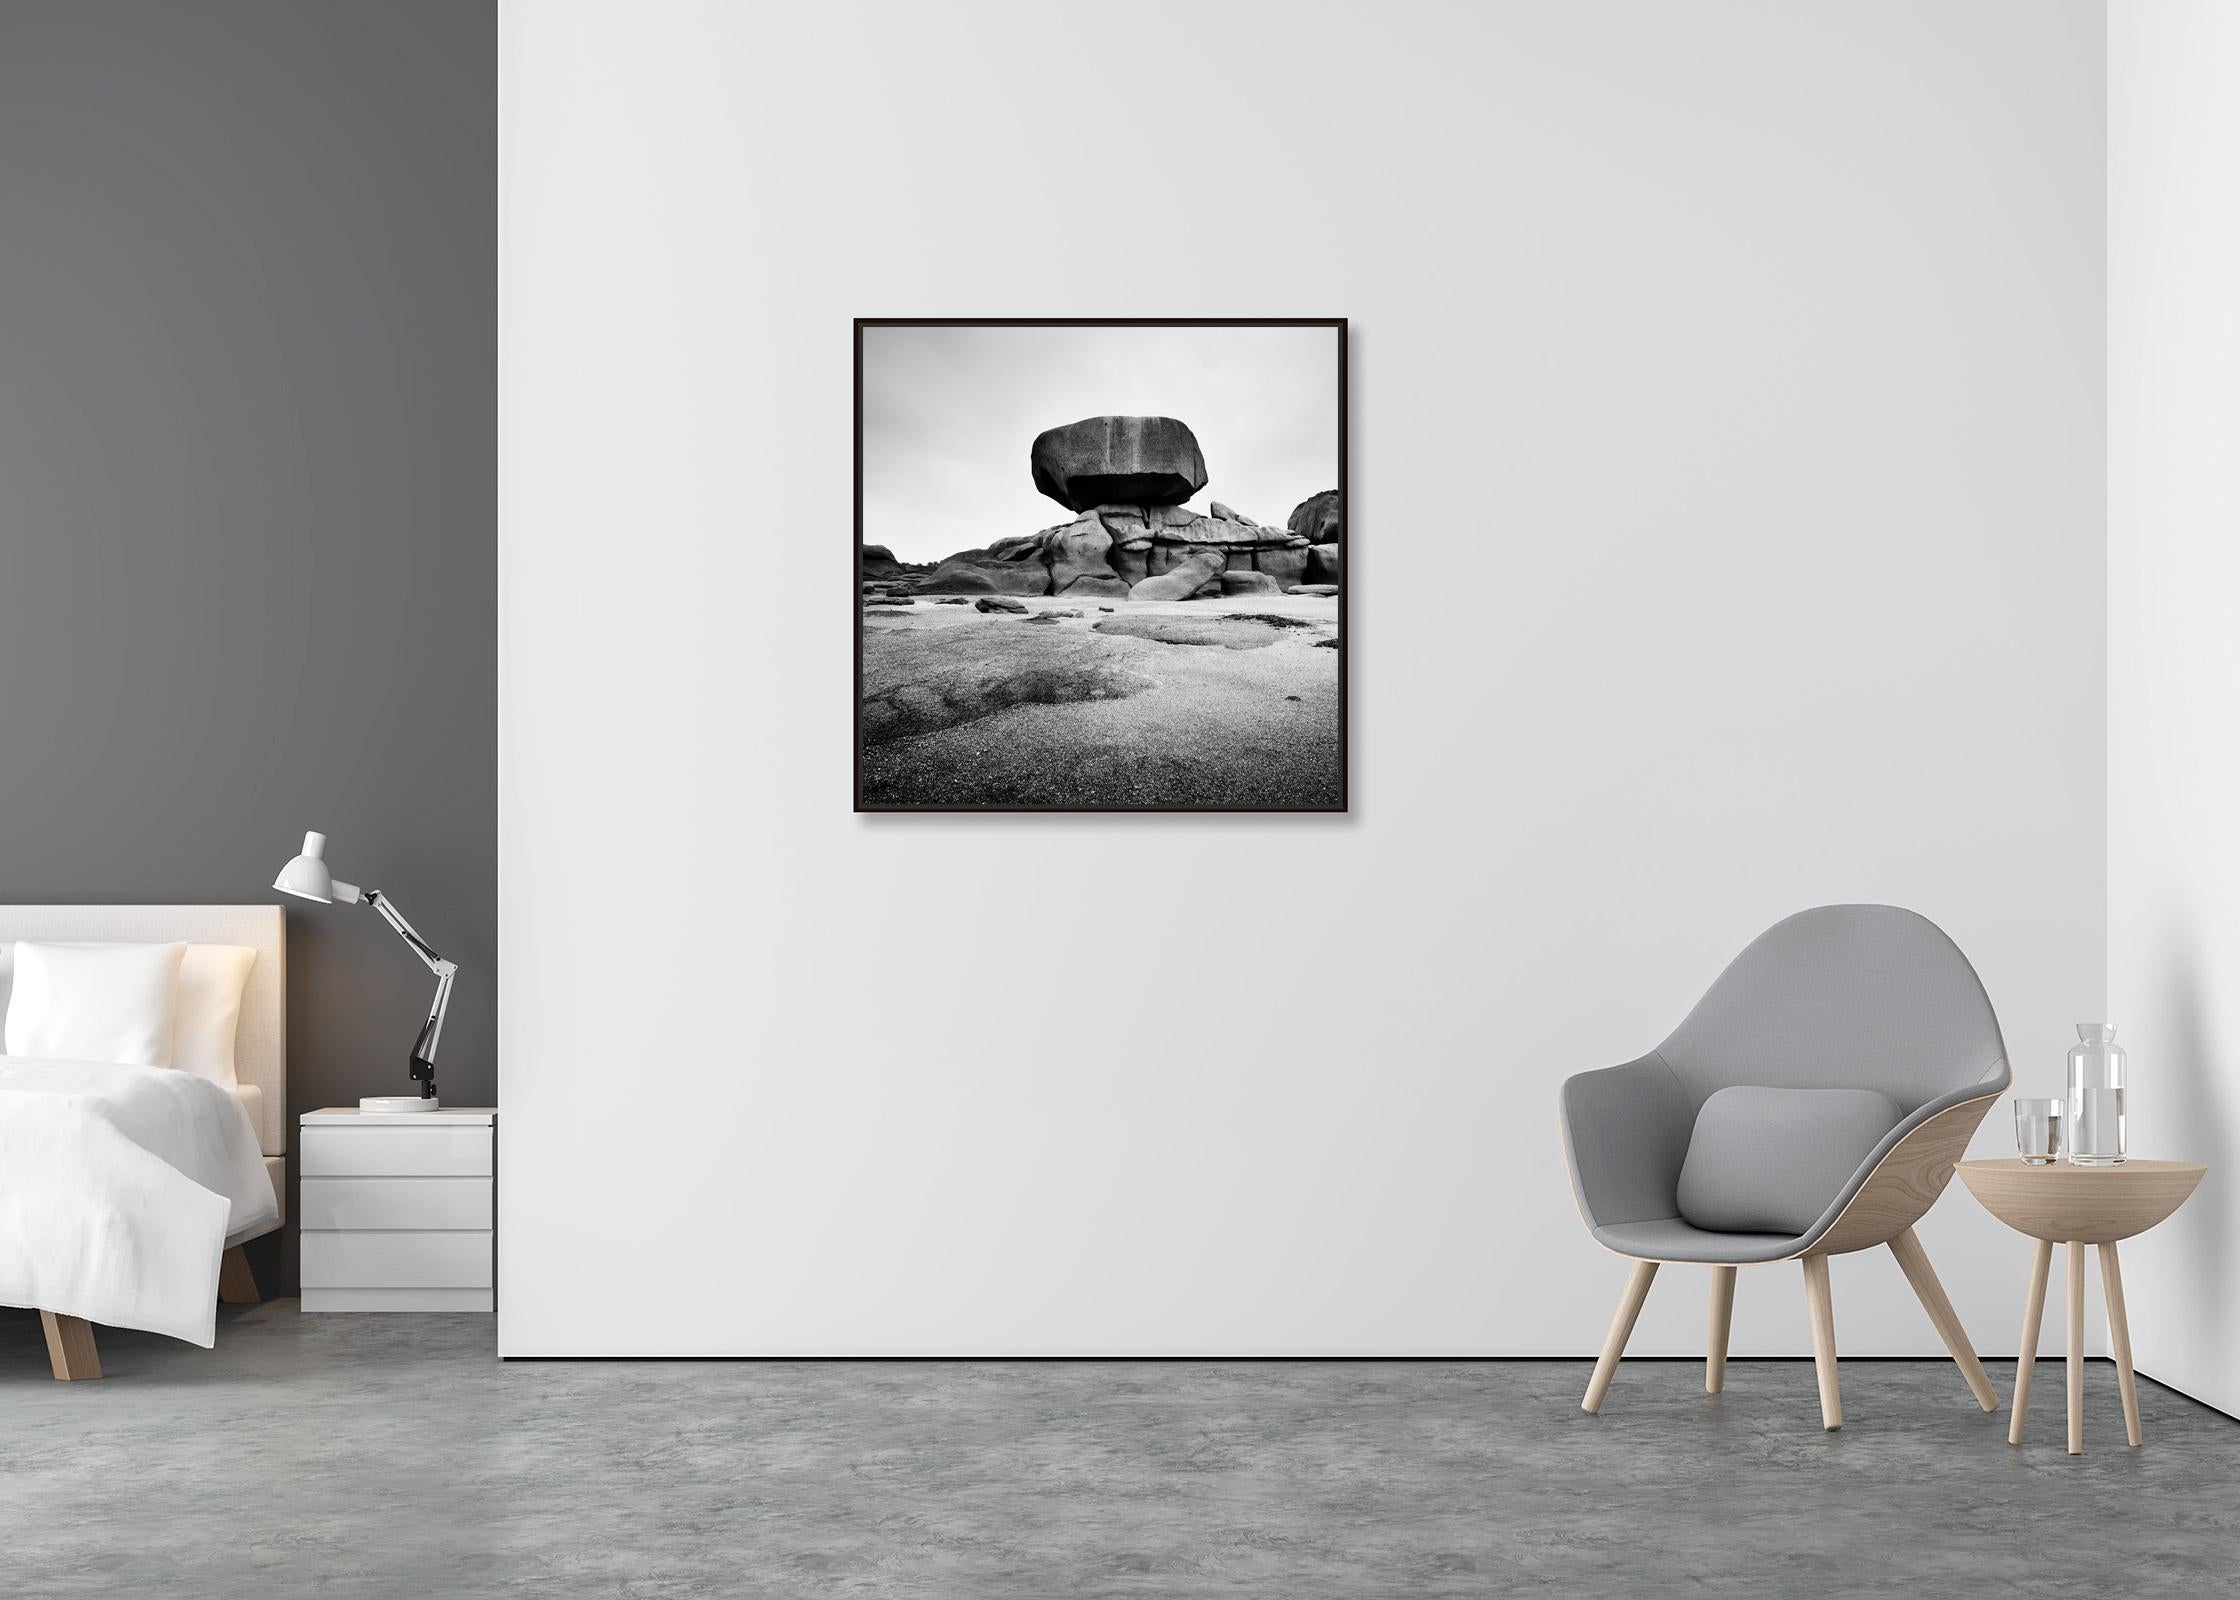 Côte de granit rose, énorme rocher, photographie noir et blanc, paysage fine art - Contemporain Photograph par Gerald Berghammer